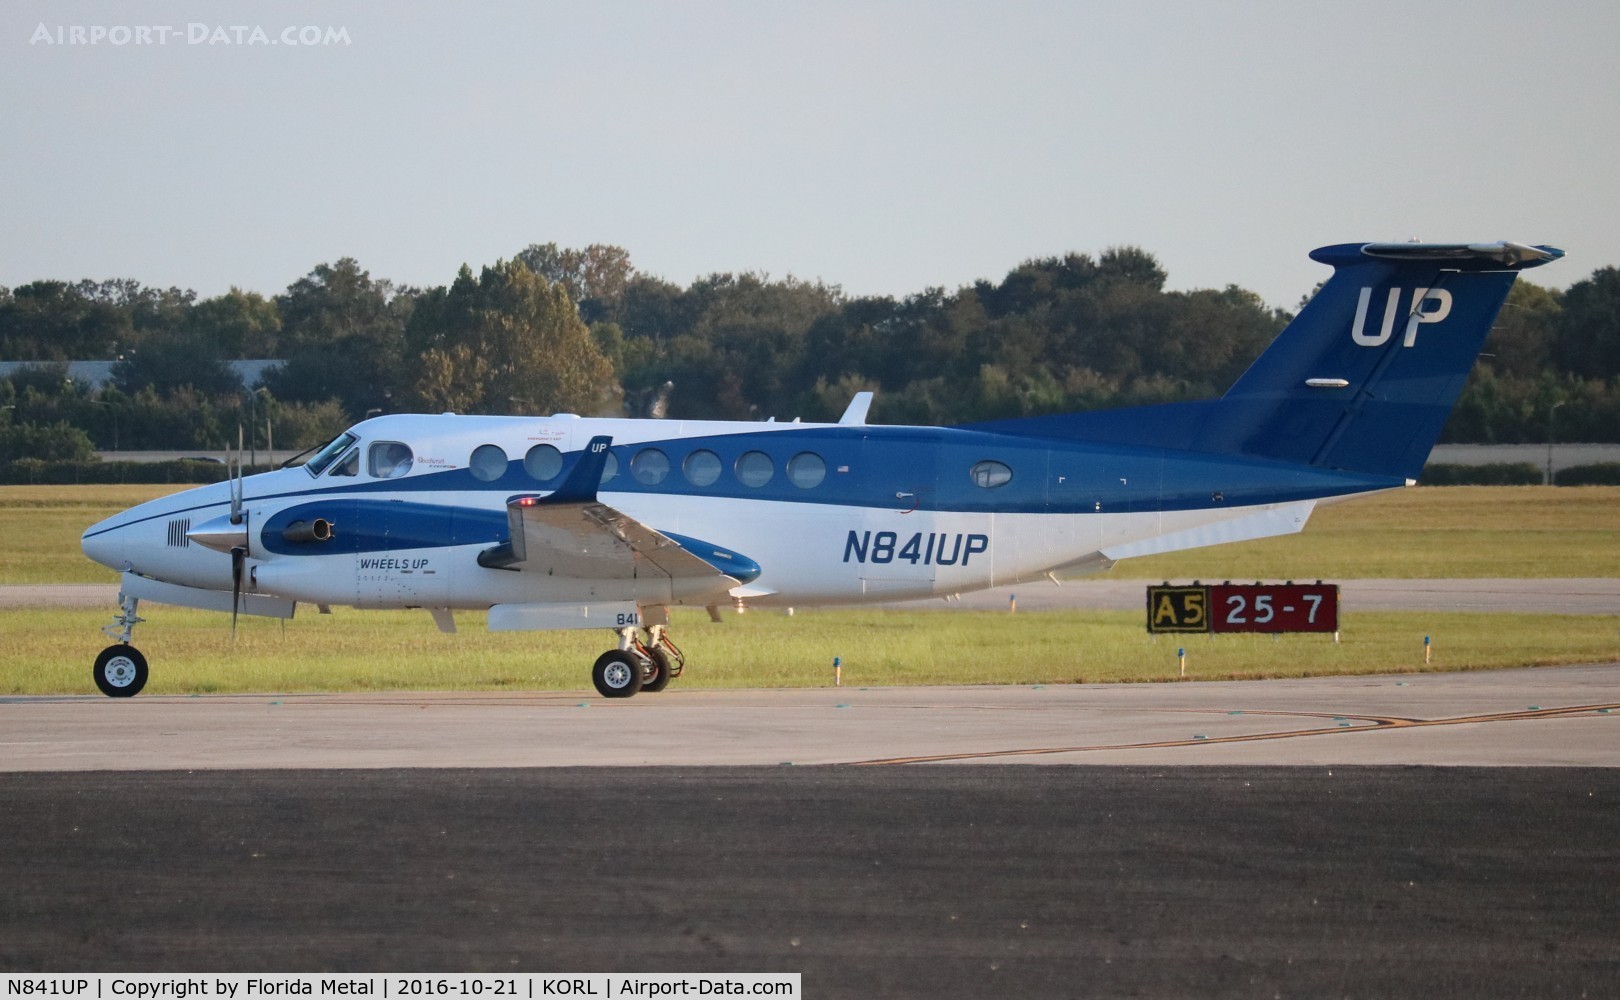 N841UP, 2015 Beechcraft King Air 300 C/N FL-987, Wheels Up